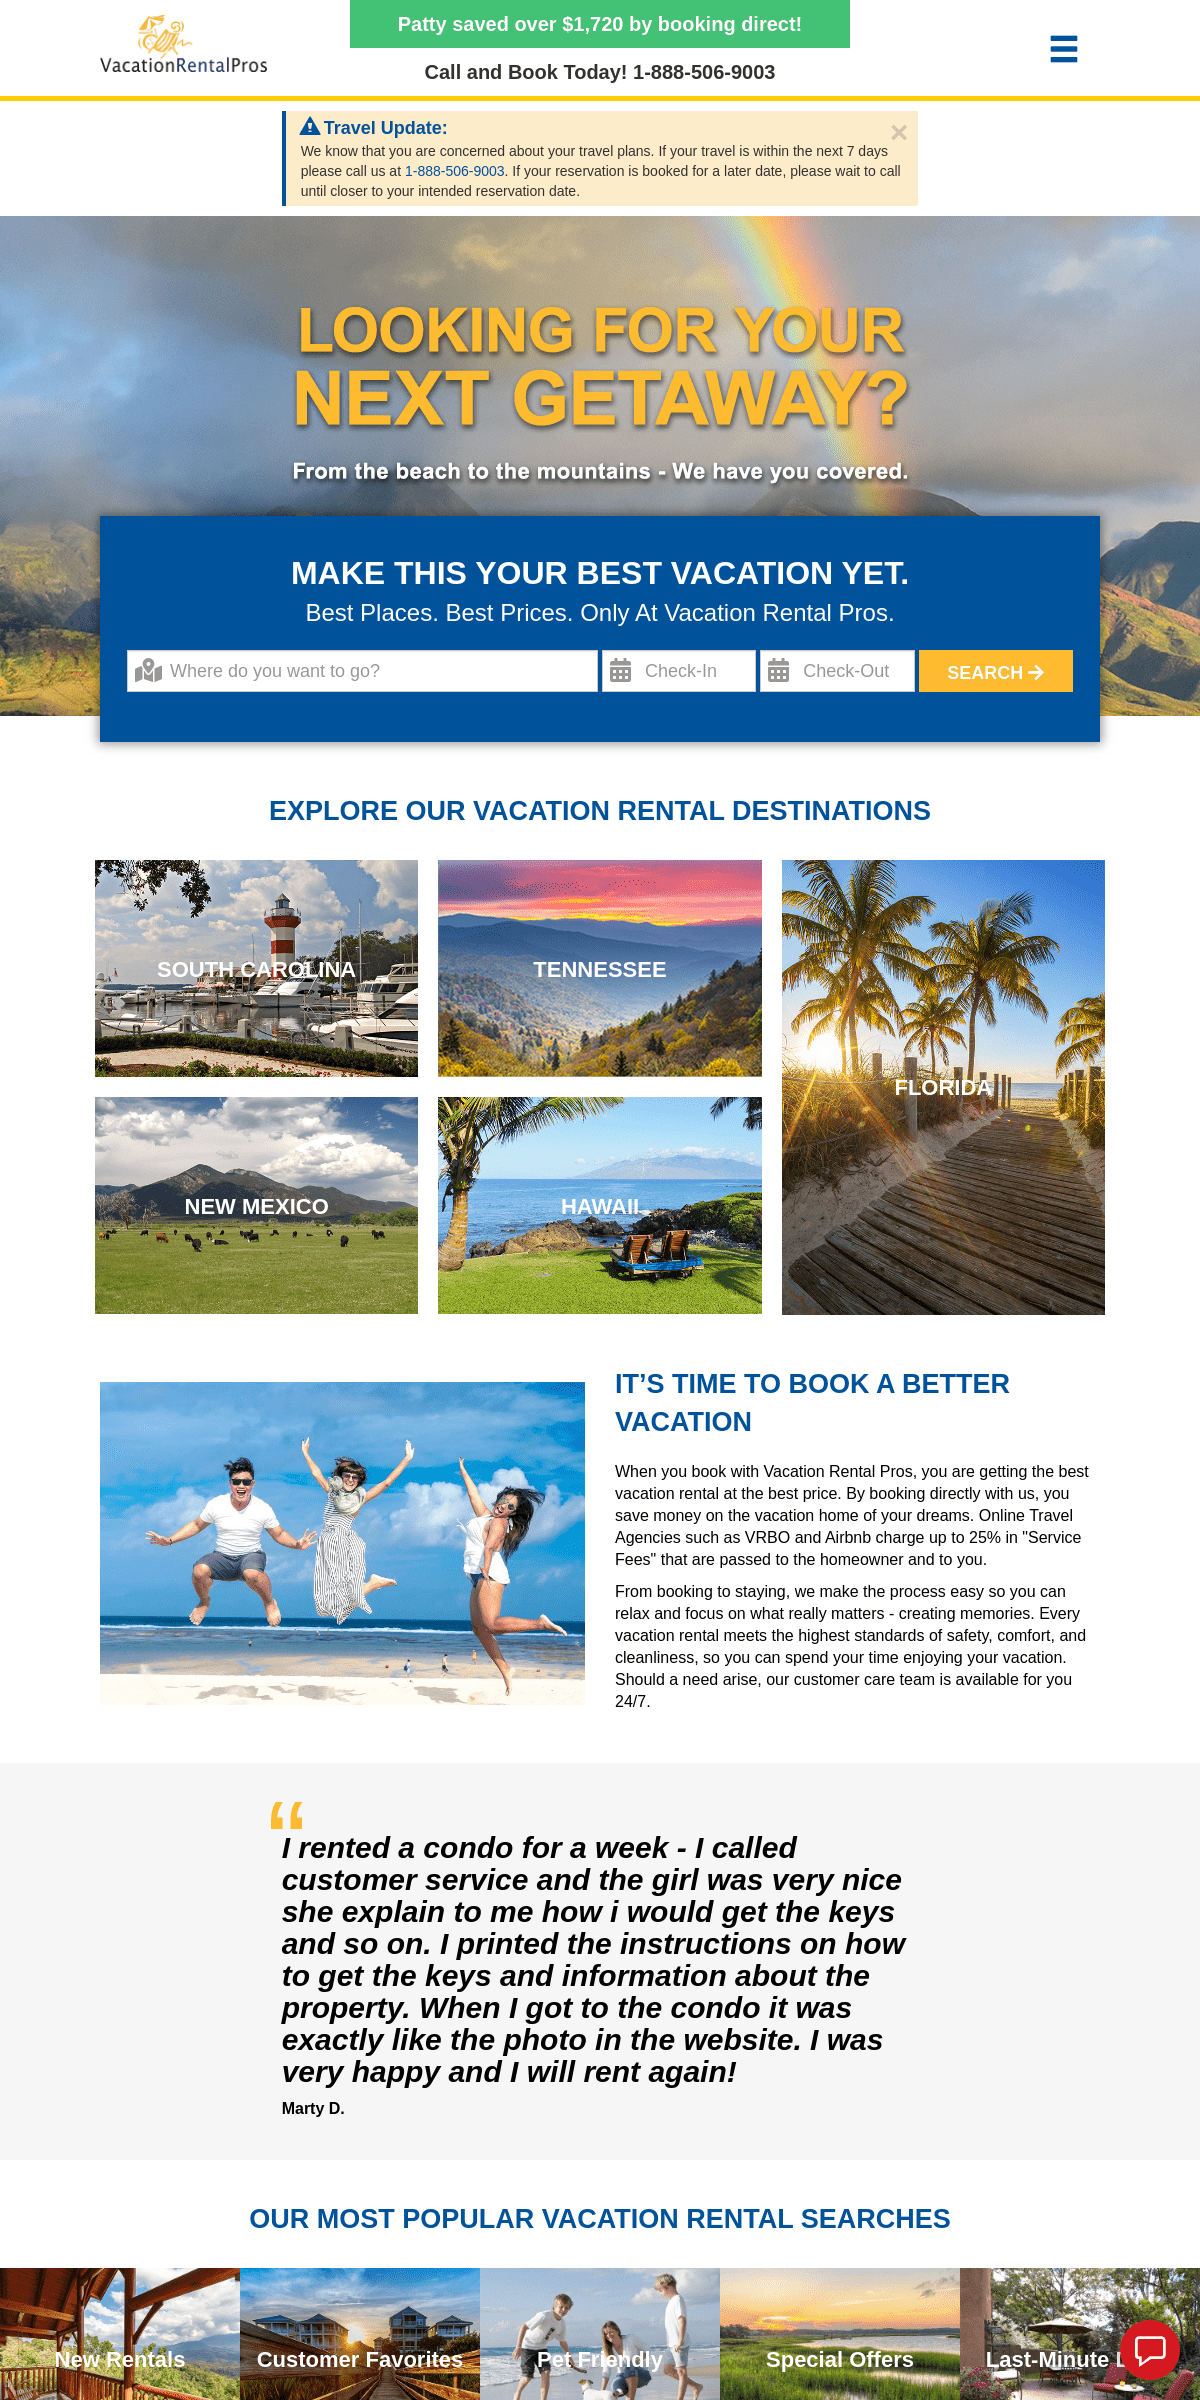 A complete backup of vacationrentalpros.com